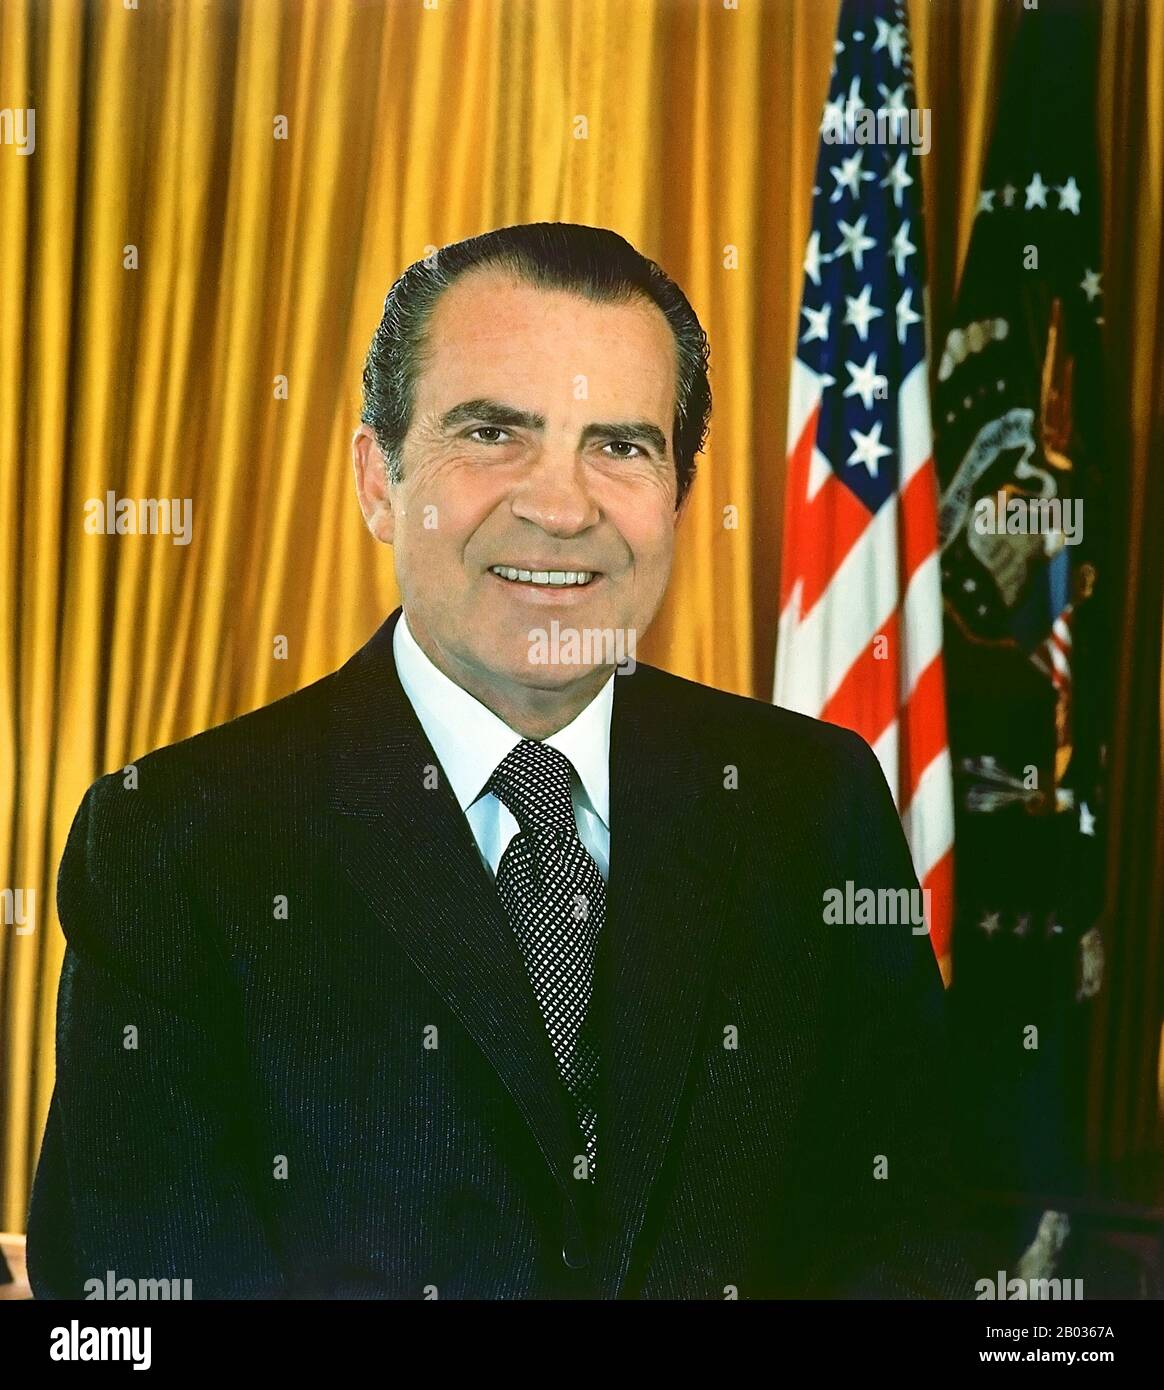 Richard Milhous Nixon (9. Januar 1913 - 22. April 1994) war der 37. Präsident der Vereinigten Staaten und war von 1969 bis 1974 amtierender Präsident. Nixon ist der einzige präsident, der das Amt niedergelegt hat. Nixon hat den Vietnamkrieg von seinen Vorgängern Kennedy und Johnson geerbt. Das amerikanische Engagement in Vietnam war weit unpopulär; obwohl Nixon den Krieg dort zunächst eskalierte, zog er in der Folge das US-Engagement zu beenden und bis 1973 die amerikanischen Streitkräfte komplett zurückzuziehen. Nixons bahnbrechender Besuch in der Volksrepublik China im Jahr 1972 eröffnete diplomatische Beziehungen zwischen den beiden Nationen, und er leitet ein Stockfoto